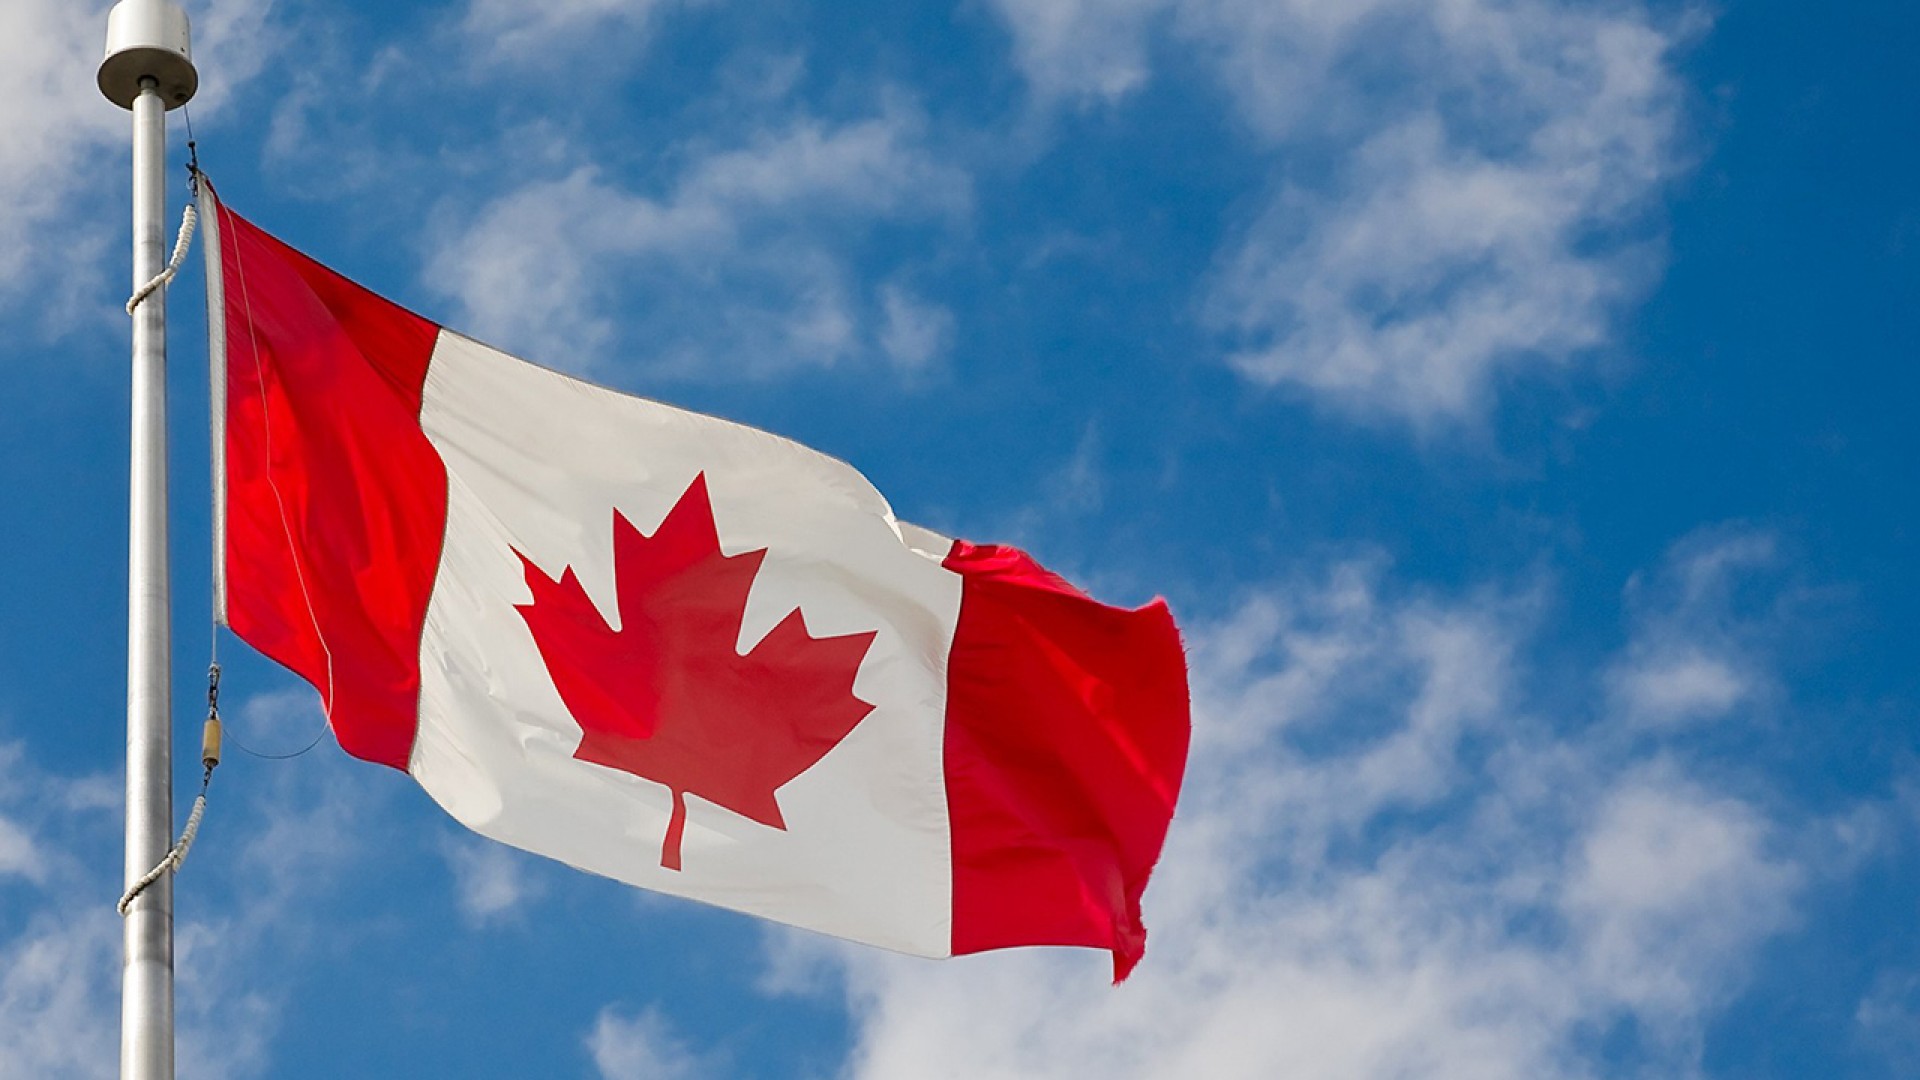 Du học Canada nên học ngành gì để có thu nhập cao?